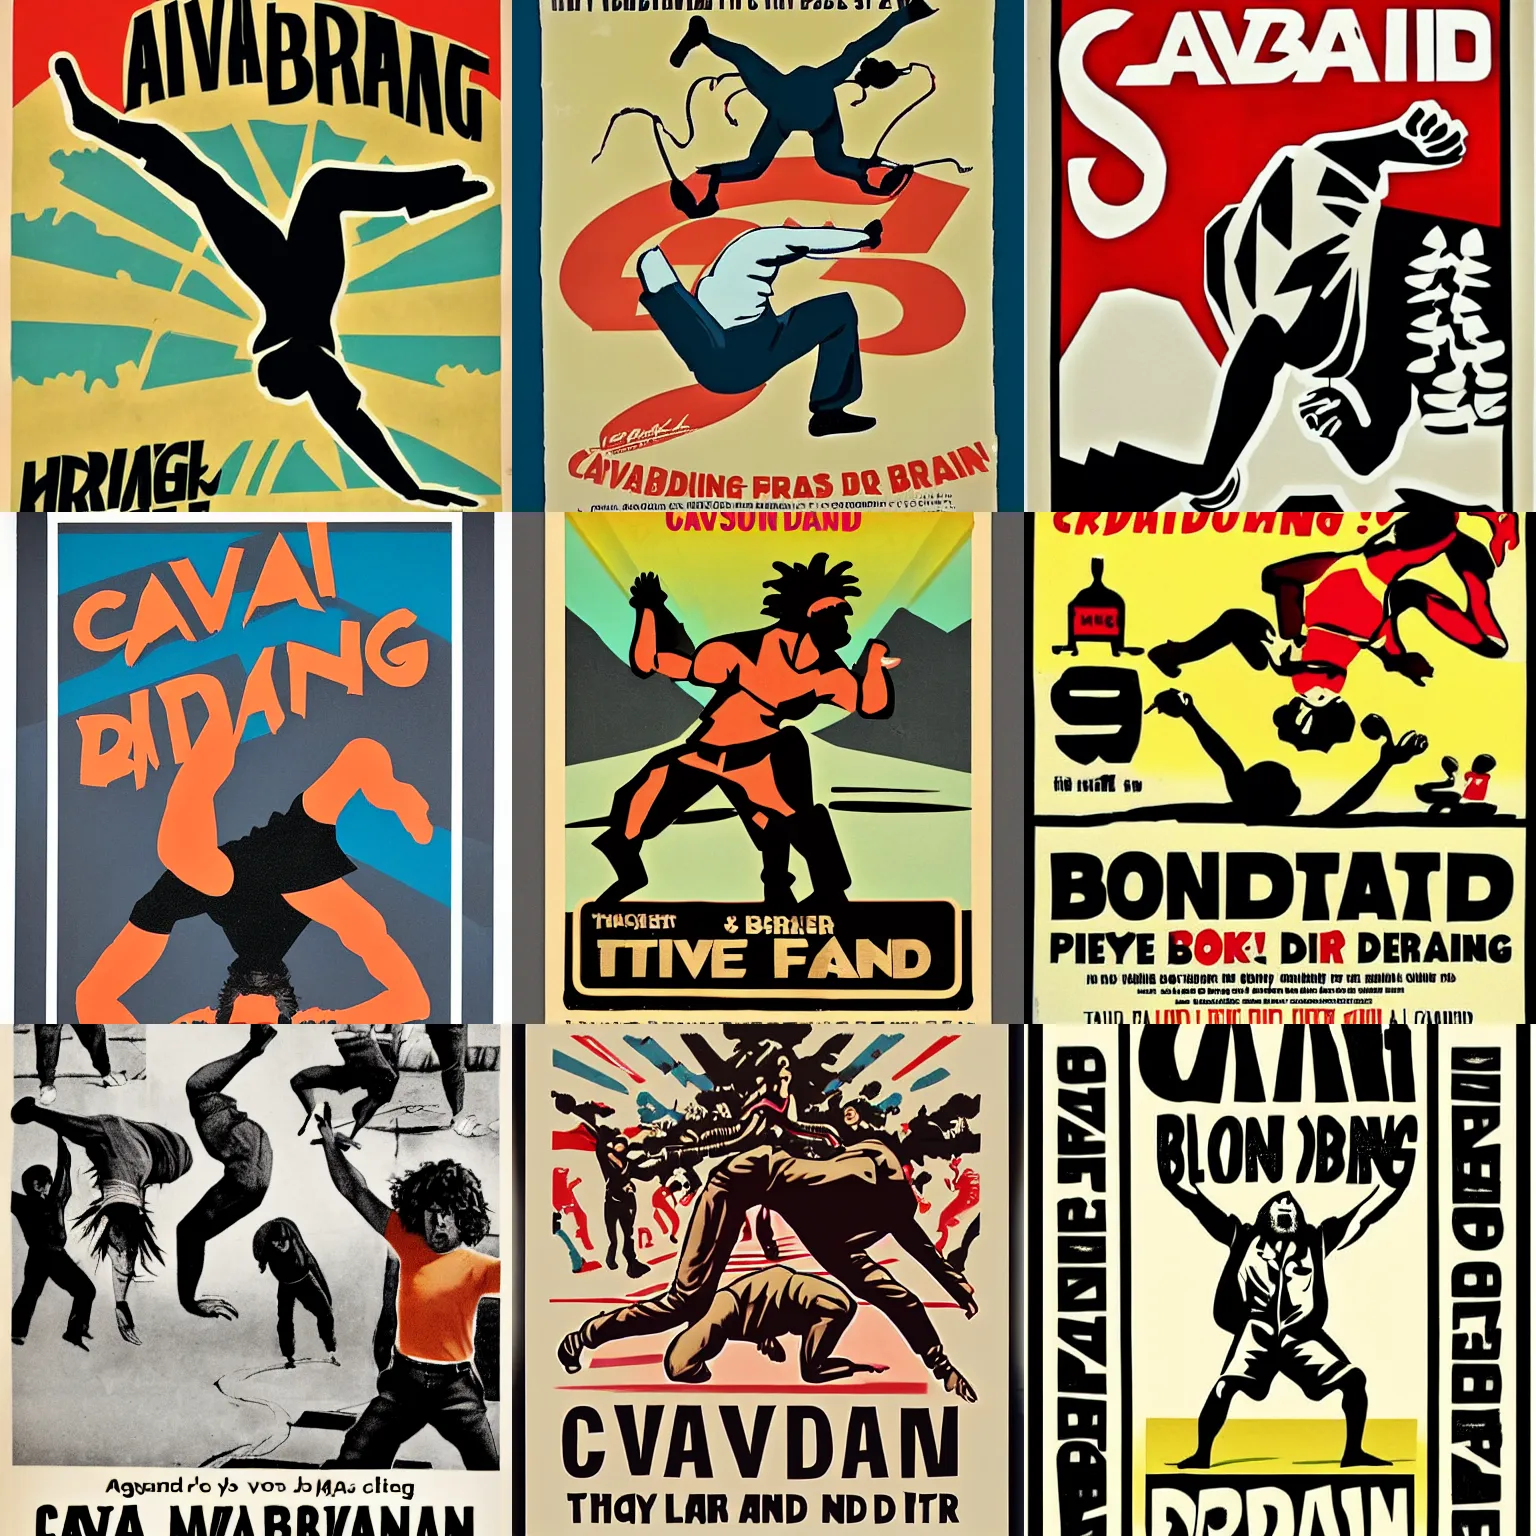 Prompt: propaganda poster of caveman break dancing